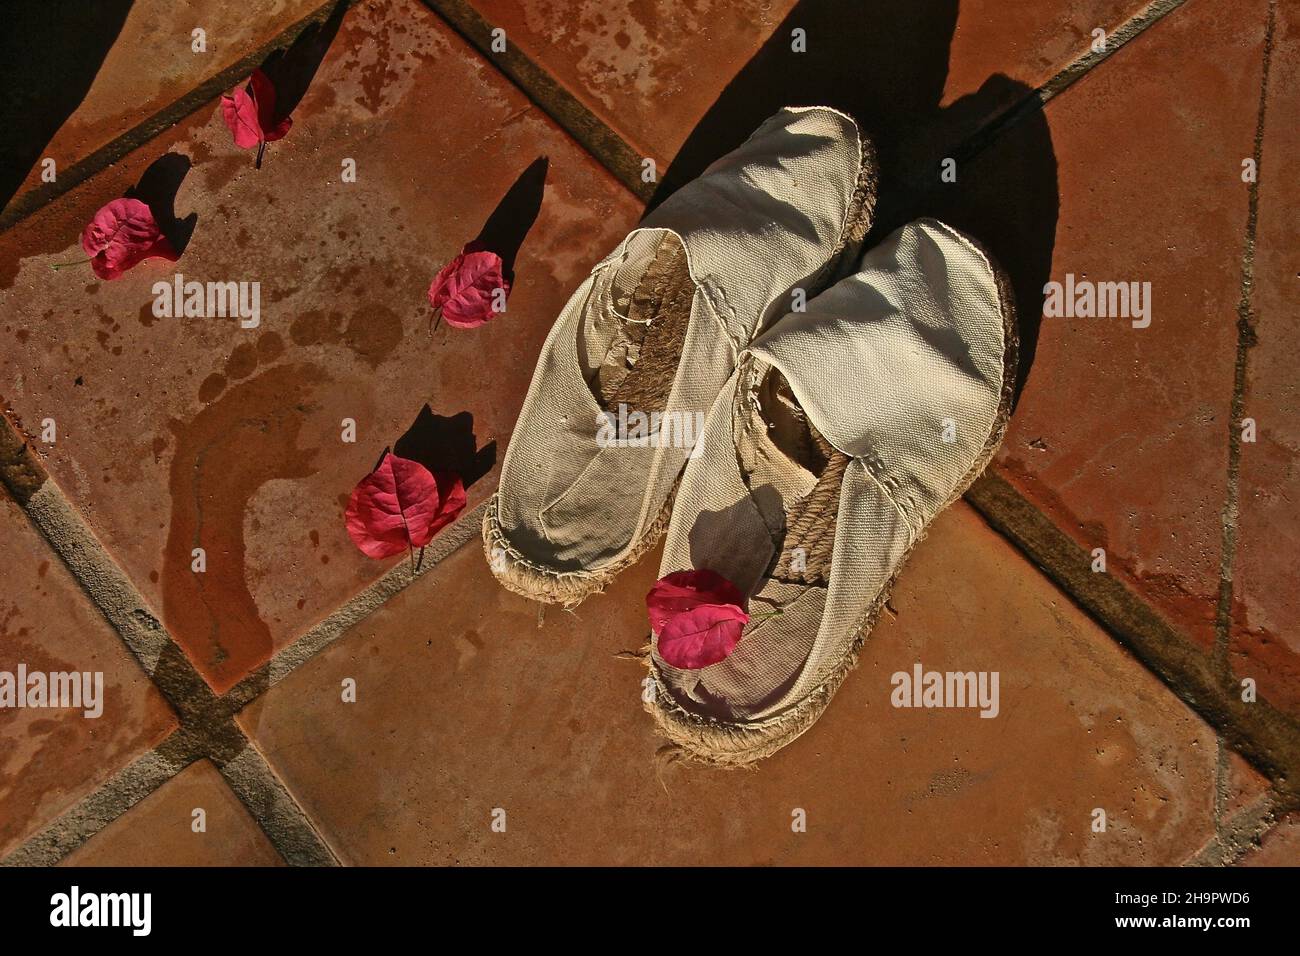 Footprint umido accanto a espandrillos, scarpe nazionali spagnole, scarpe casual, loafer, pantofole, scarpe comode, scarpe in tela, palle in tessuto, naturale Foto Stock